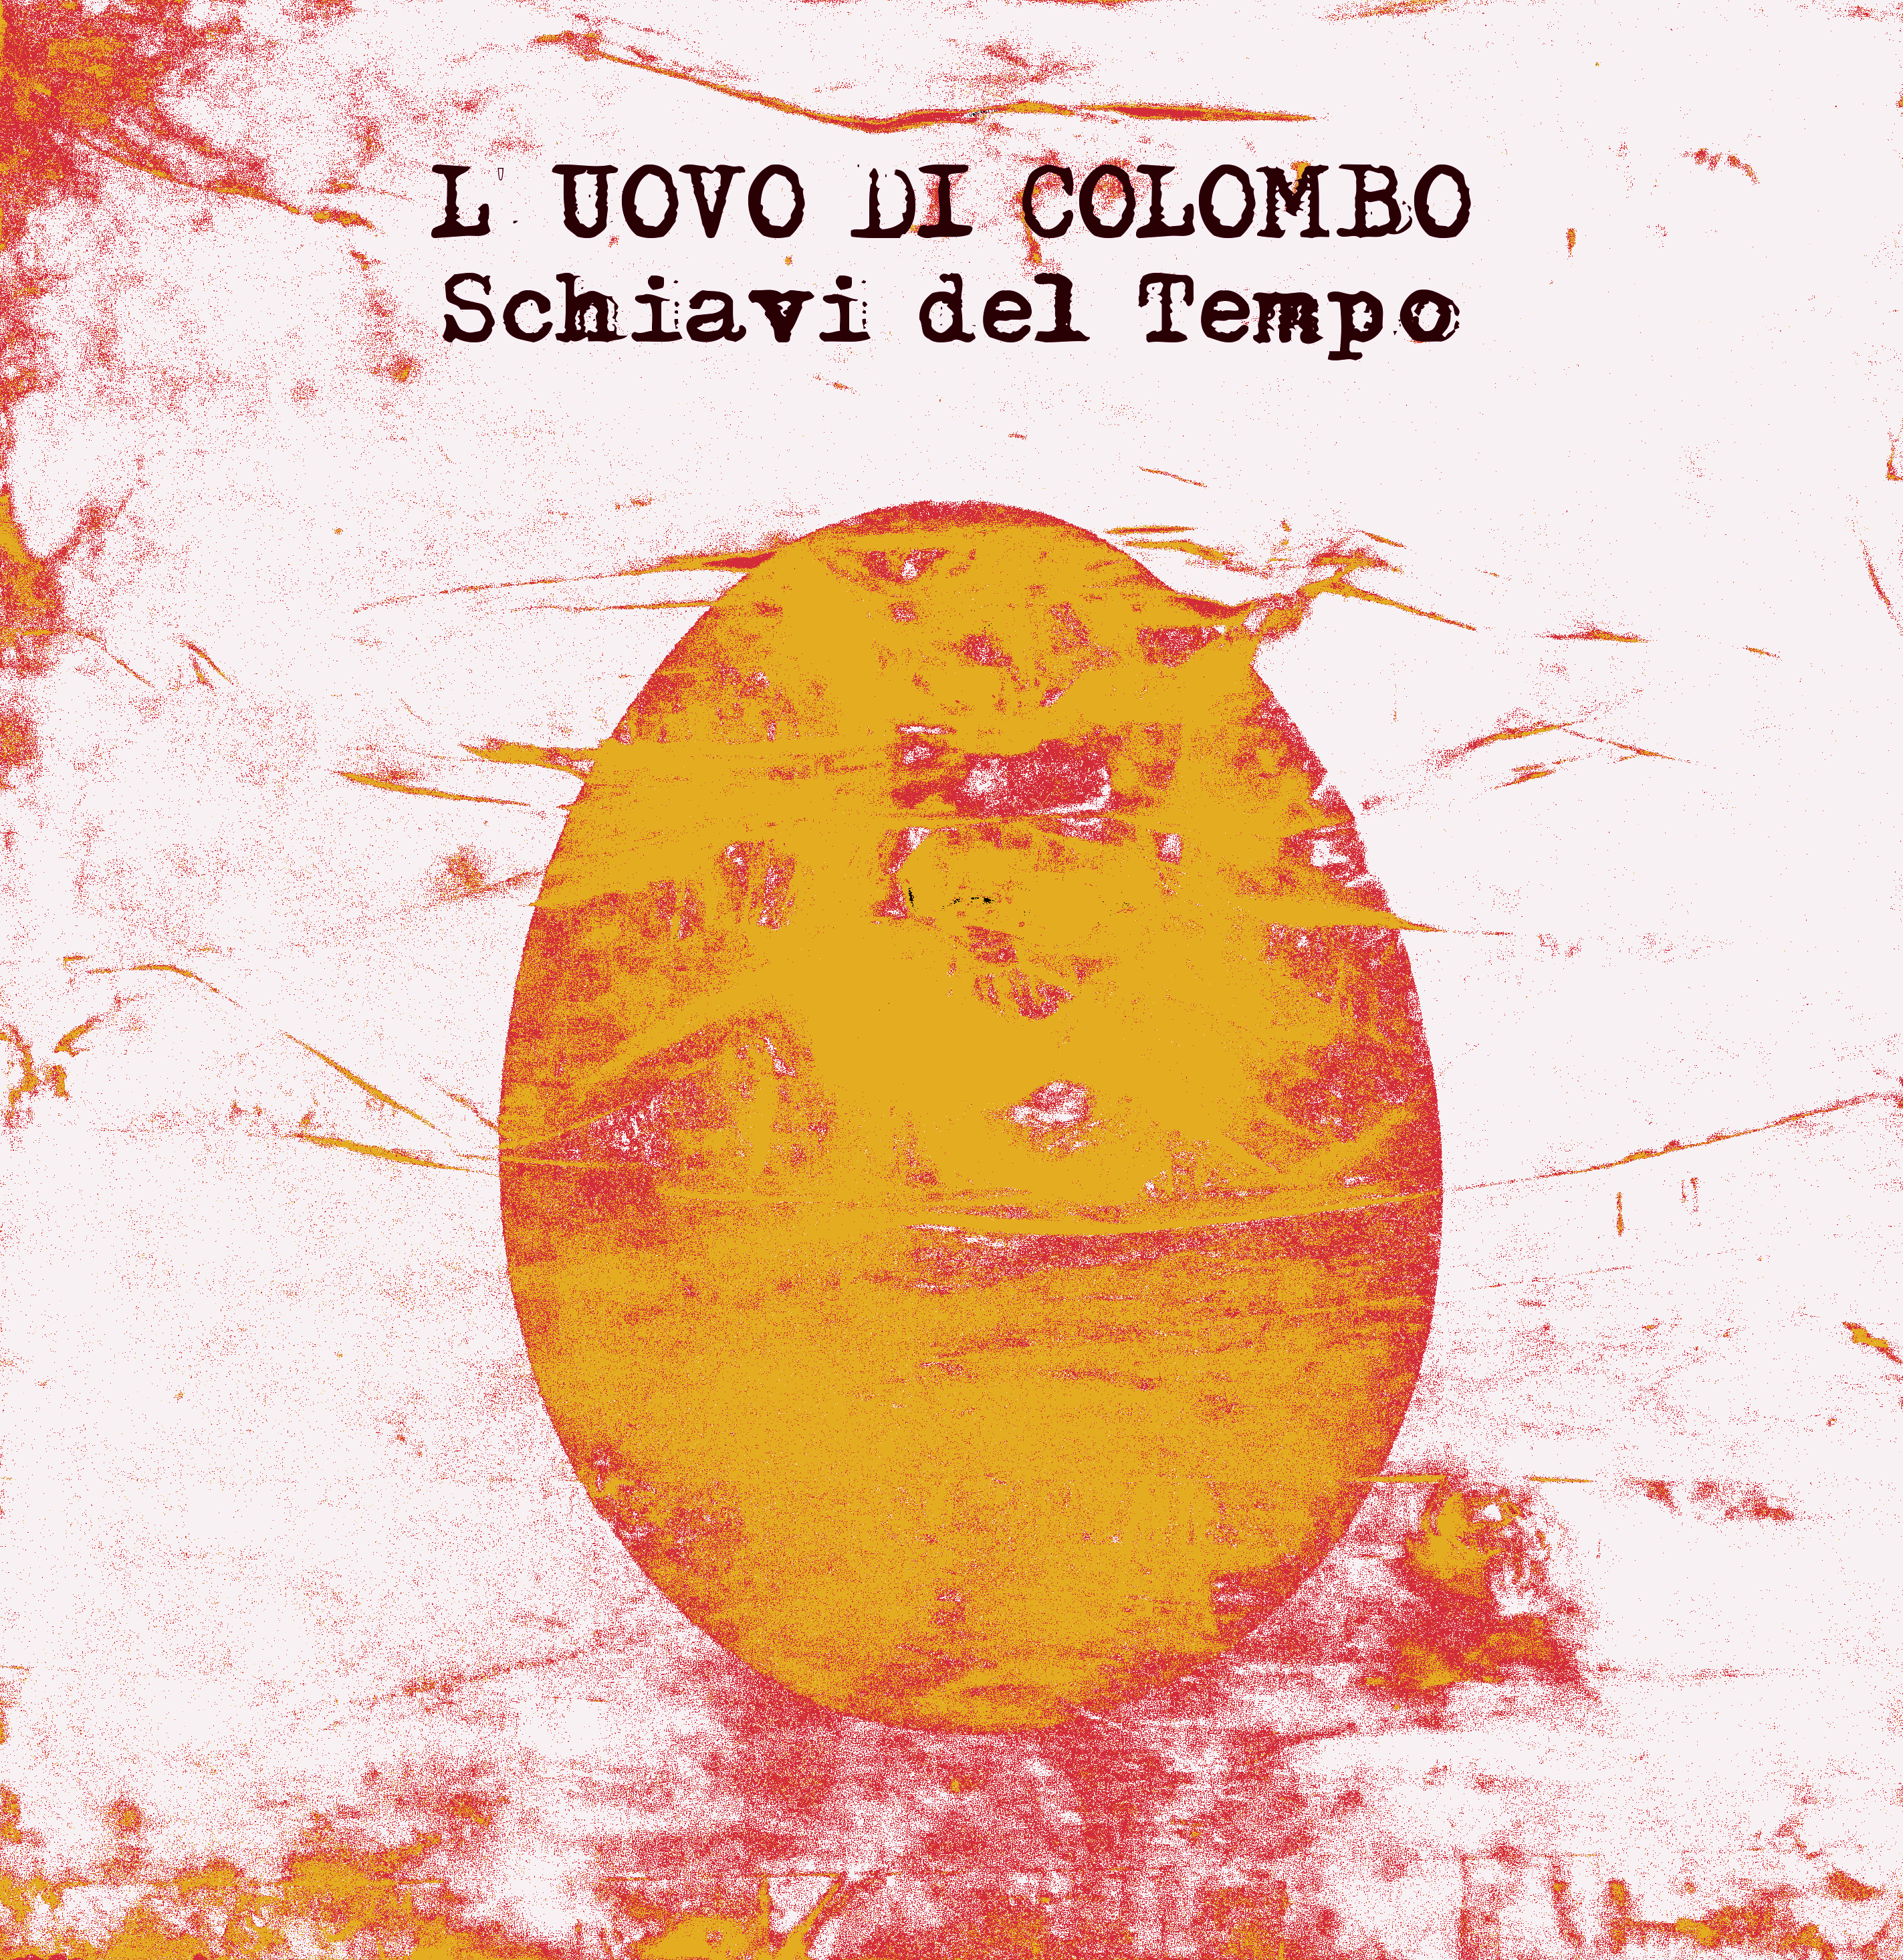 L'UOVO DI COLOMBO - Schiavi del Tempo (New edition) CD digisleev